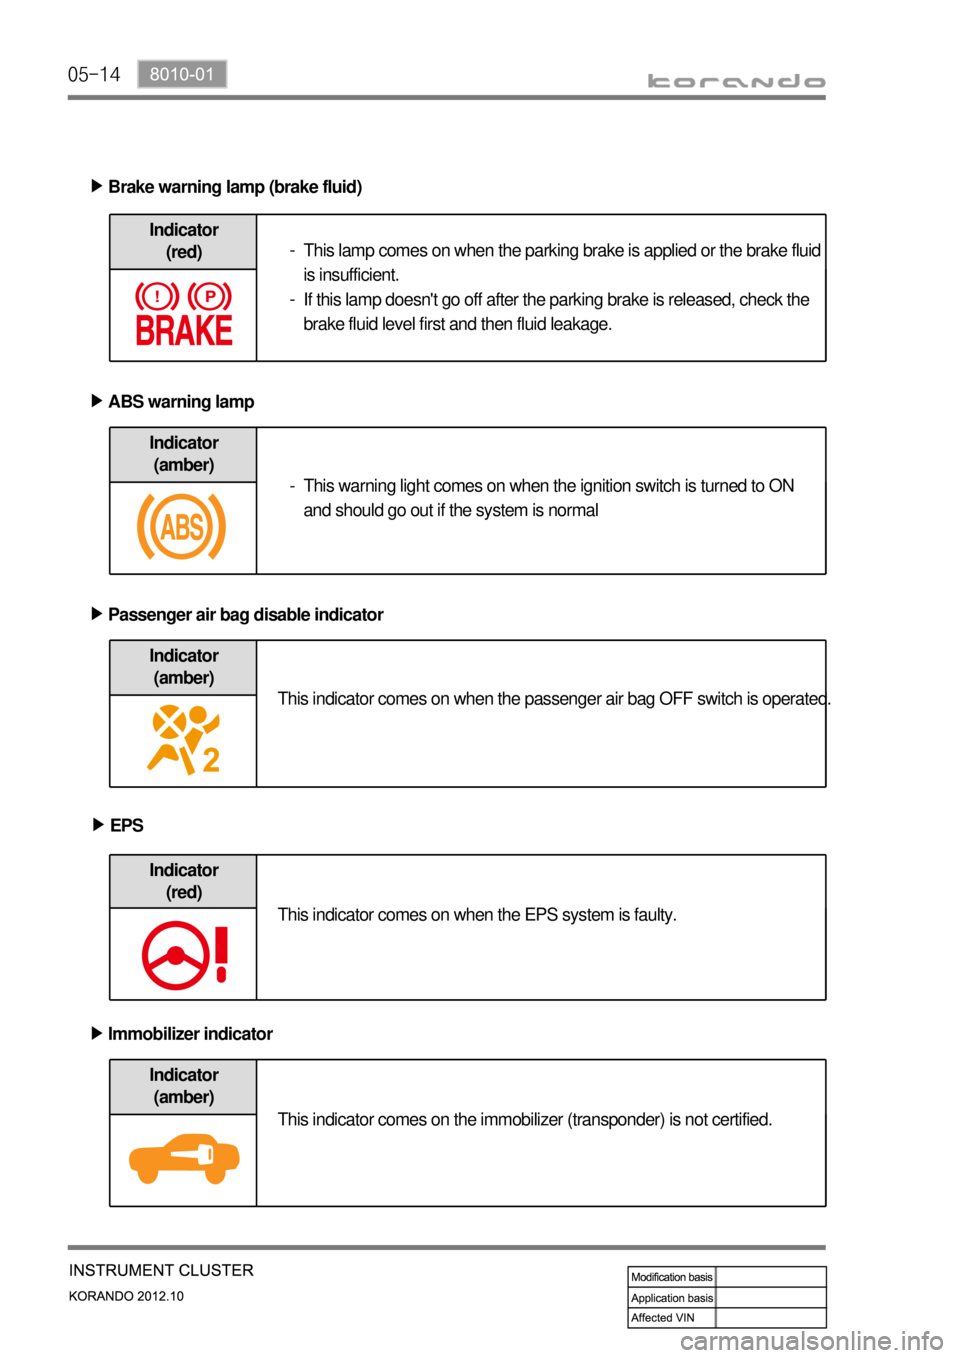 SSANGYONG KORANDO 2012  Service Manual 05-14
Indicator 
(amber)
Brake warning lamp (brake fluid) ▶
ABS warning lamp ▶
Passenger air bag disable indicator ▶
Indicator 
(red)
Indicator 
(amber)
Indicator 
(red)
EPS ▶
Indicator 
(ambe